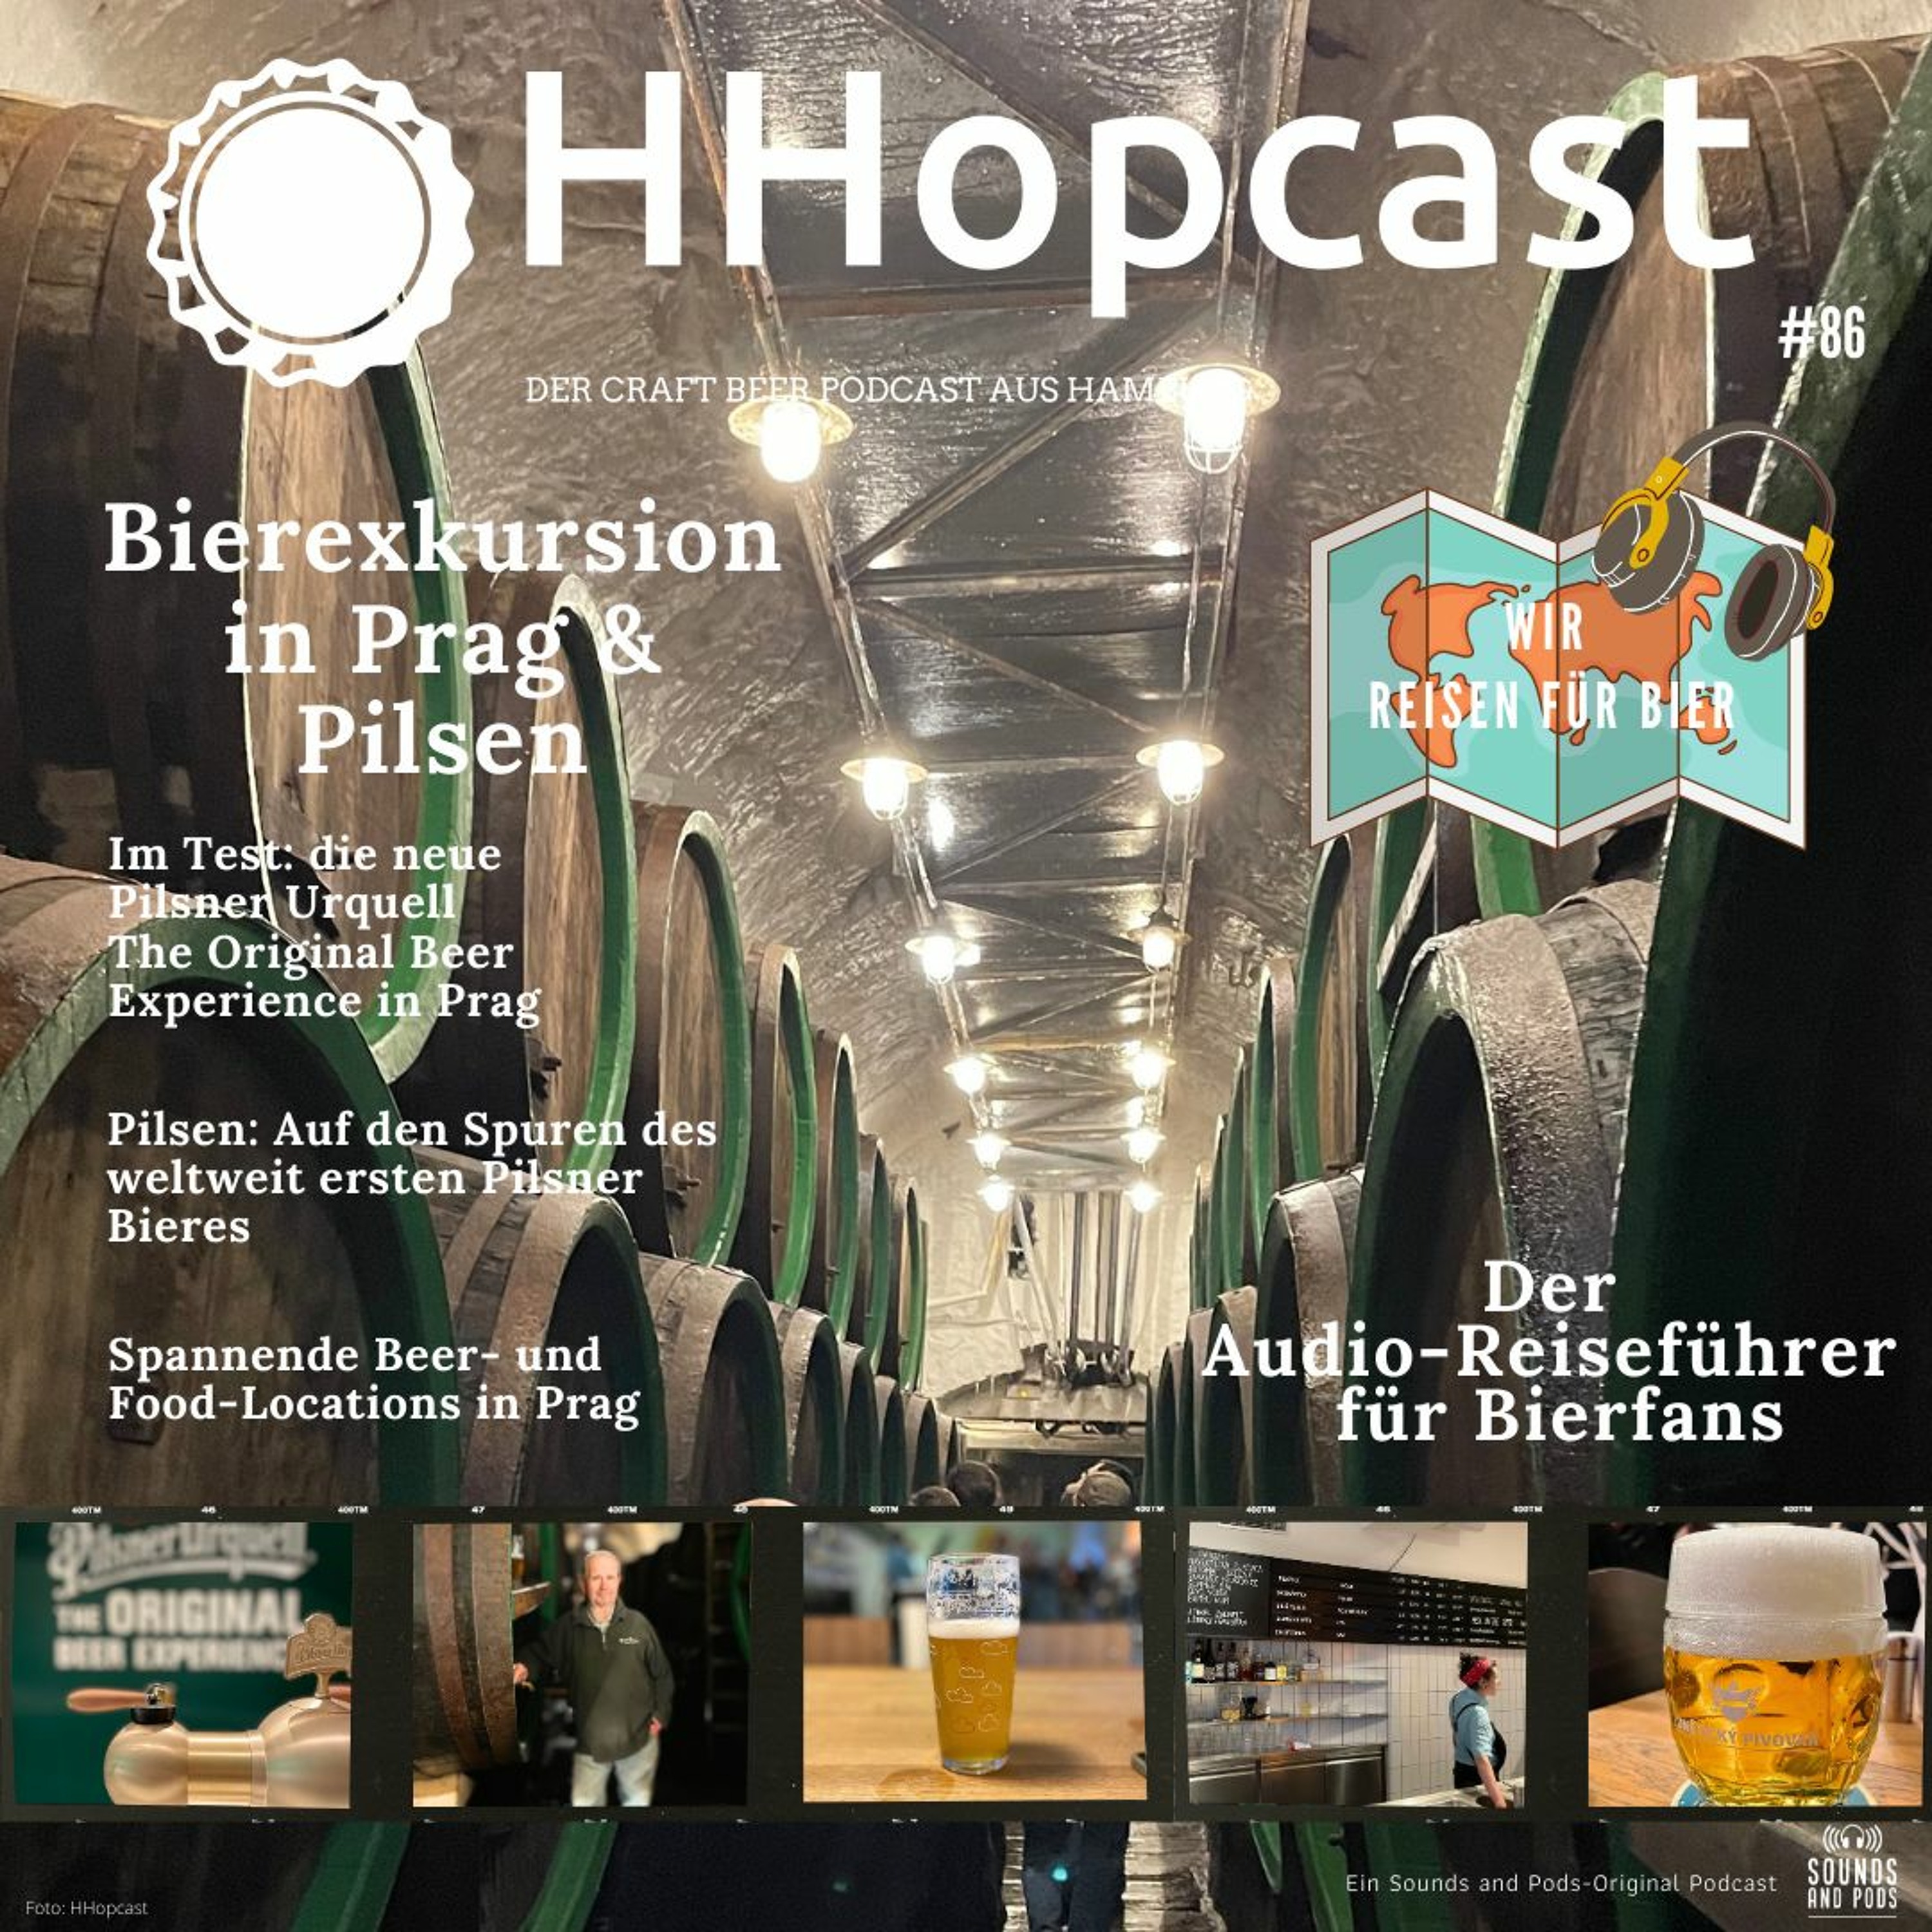 Bierexkursion in Prag & Pilsen. Ein Audio-Reiseführer für Bierfans